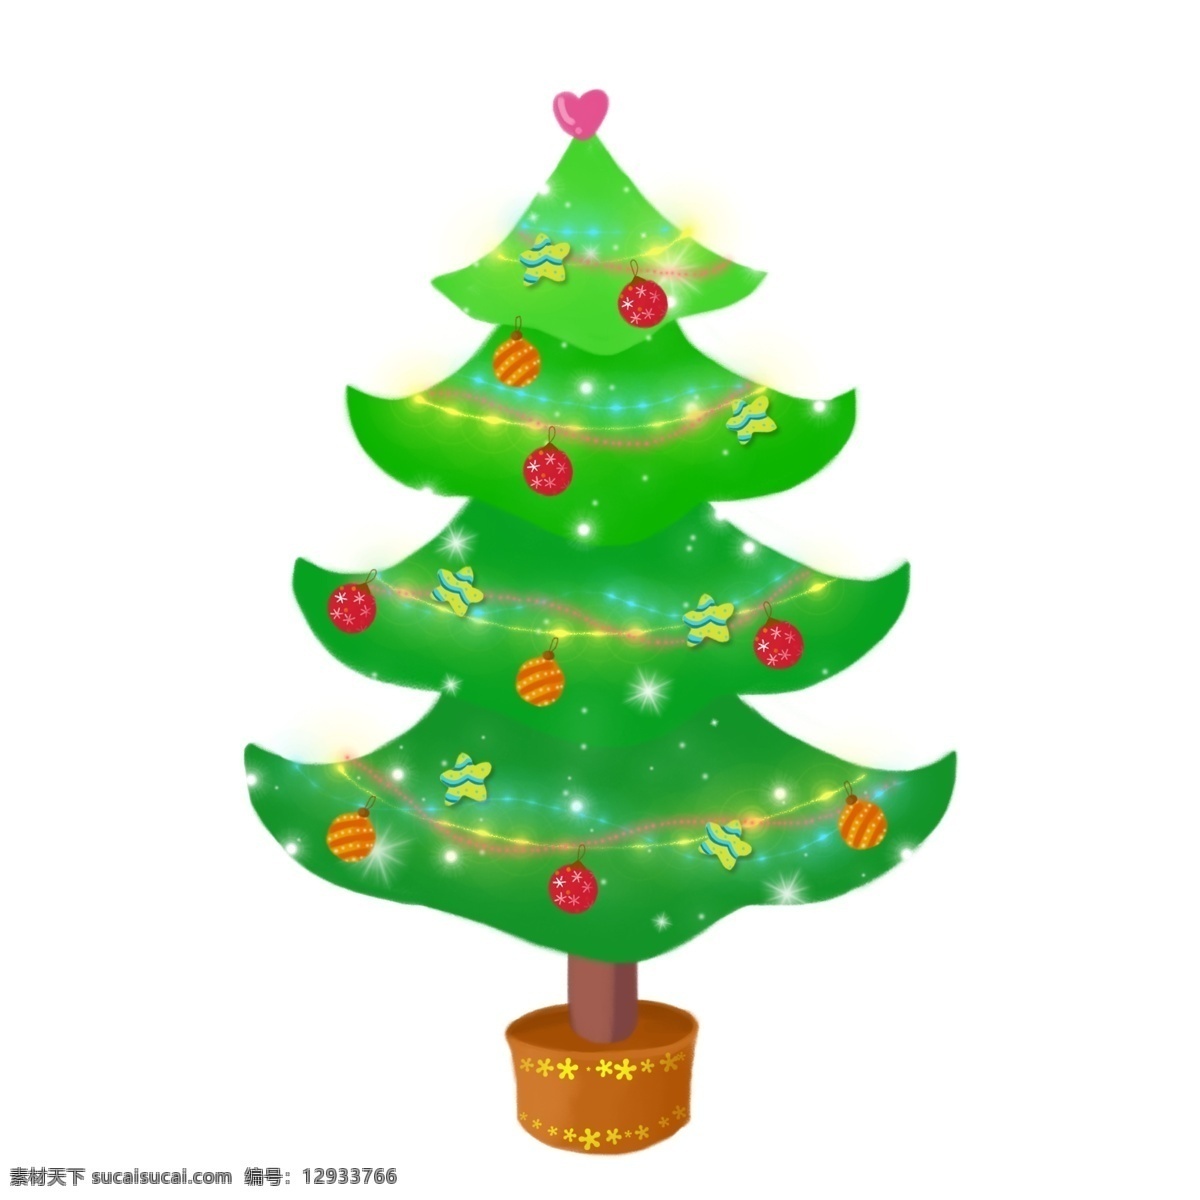 圣诞节 手绘 插画 礼物 圣诞树 彩球 可爱 节日